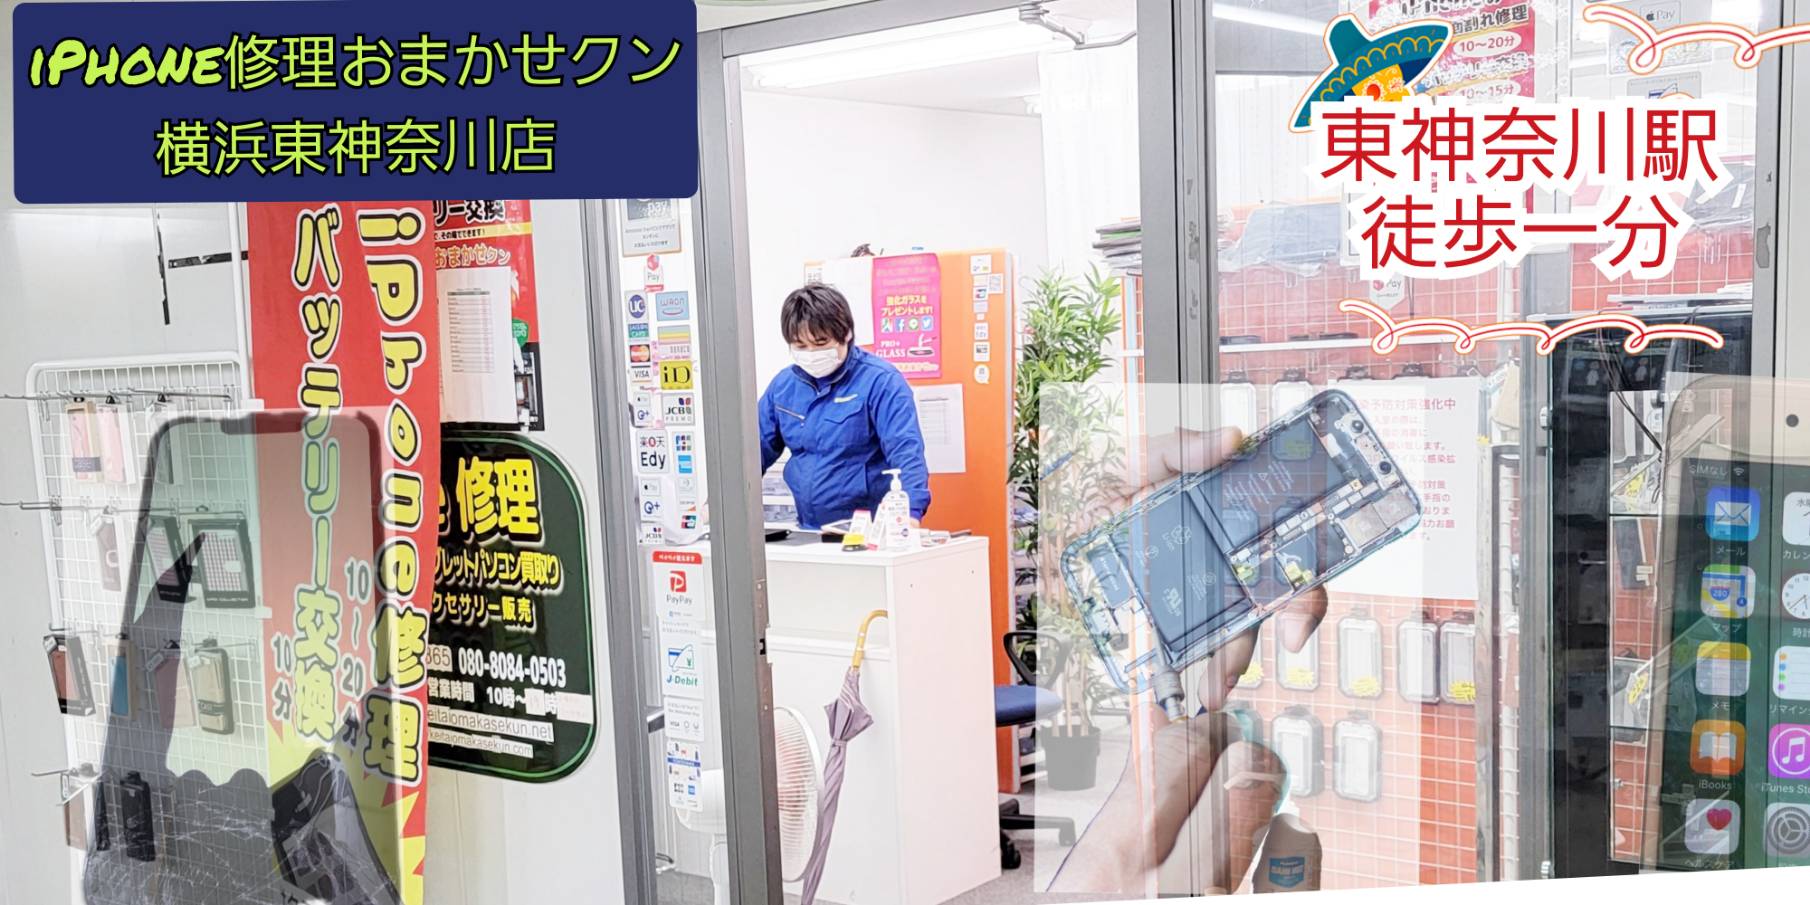 iPhone修理バッテリー交換横浜おまかせクンスタッフ店舗写真